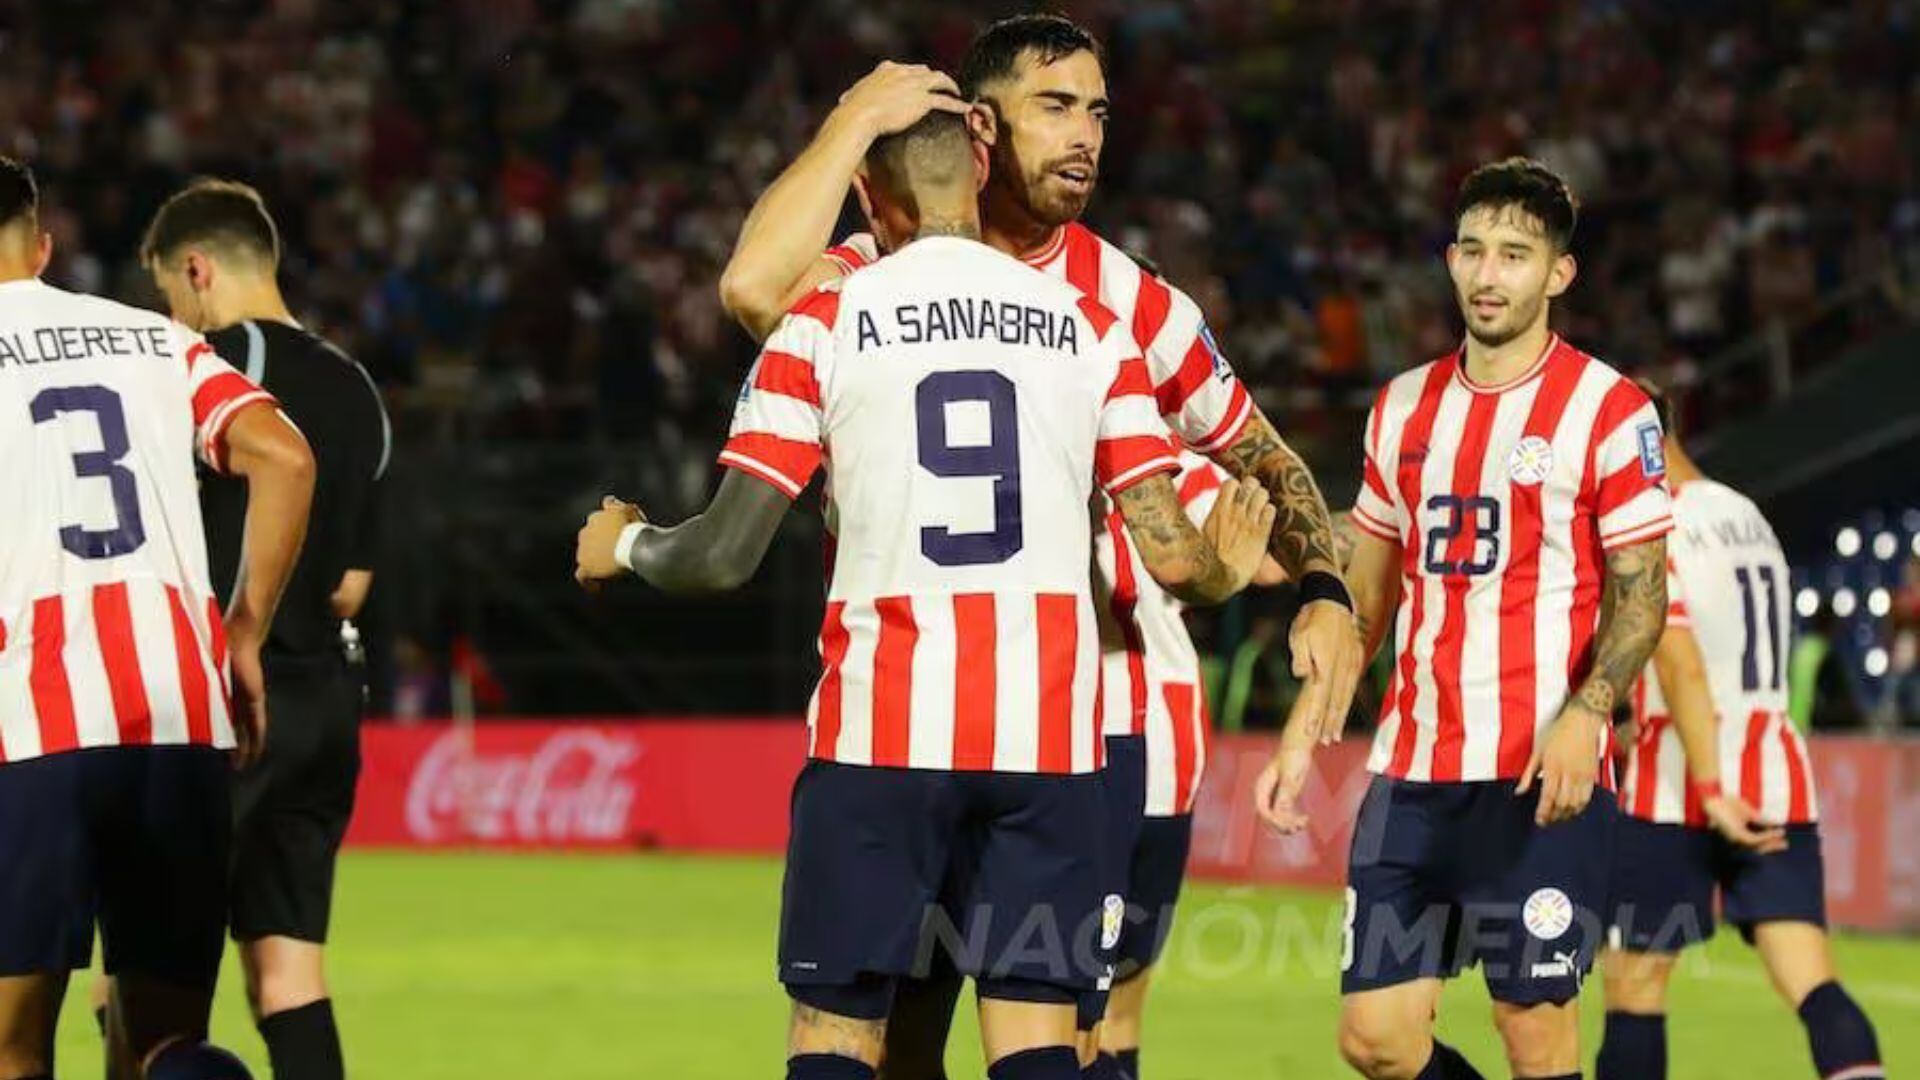 Gabriel Ávalos y Antonio Sanabria son los líderes en ataque de Paraguay. - Crédito: Nación Media